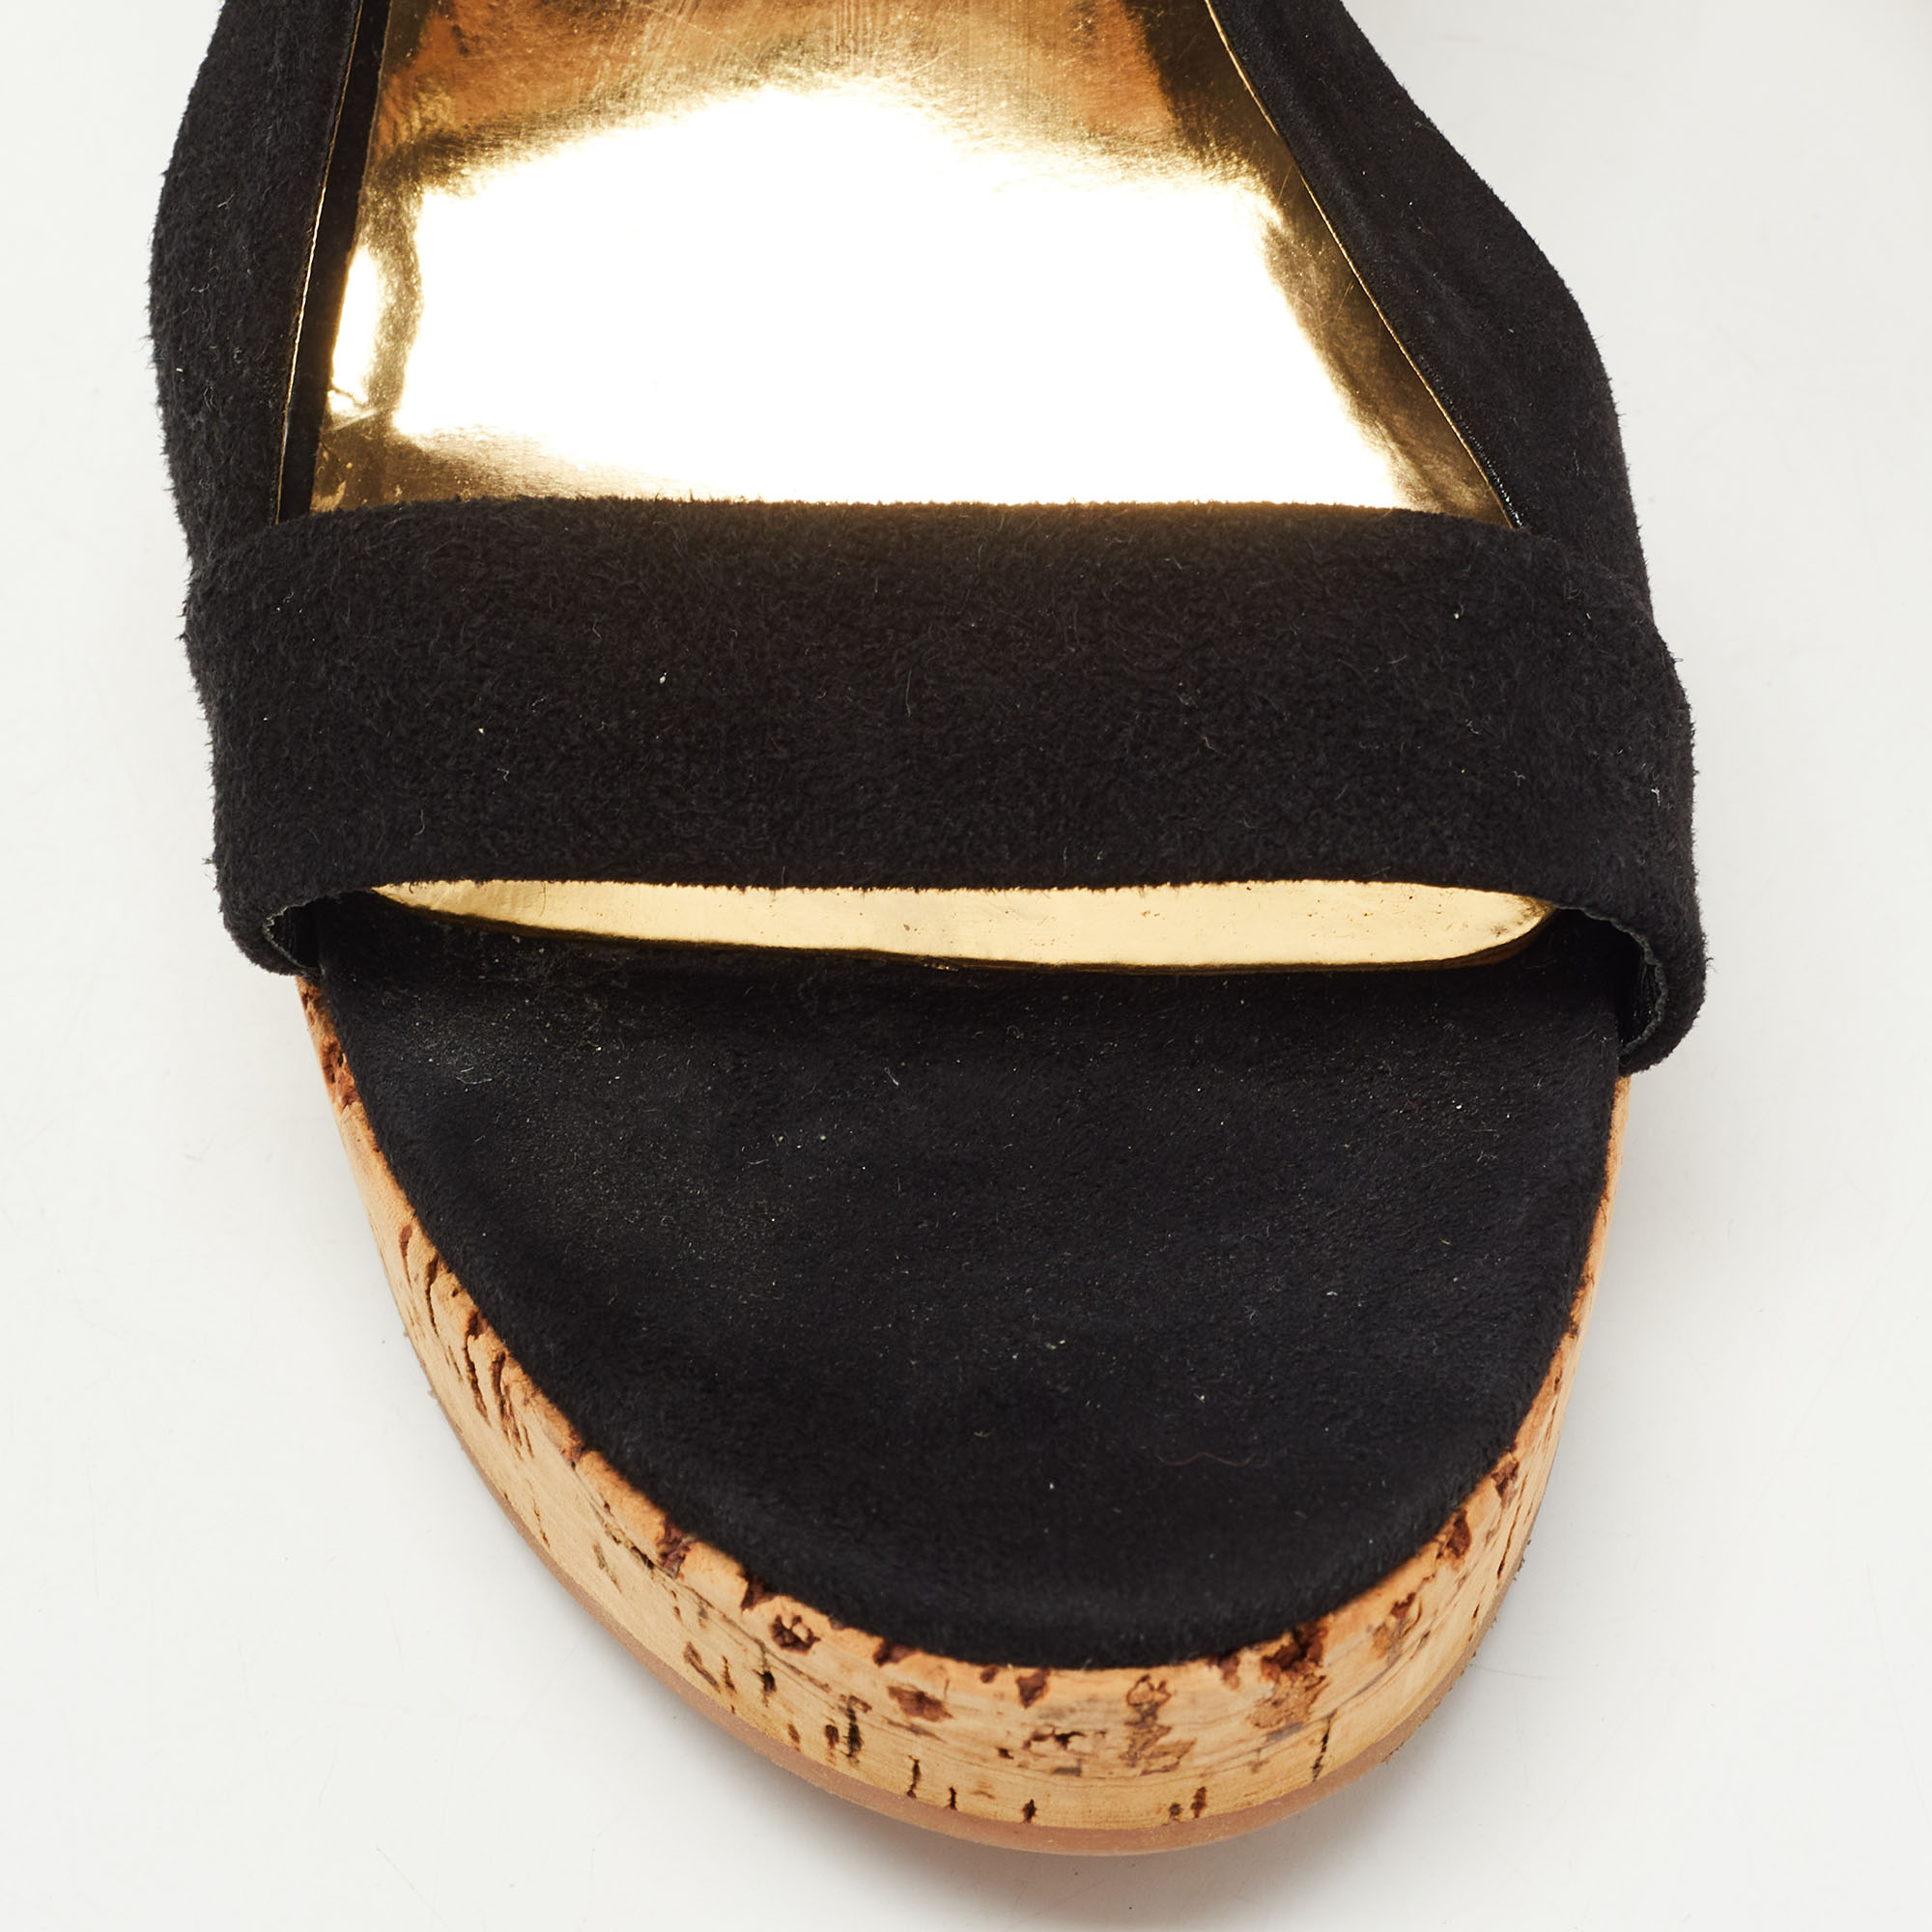 Miu Miu Black Suede Cork Wedge  Sandals Size 37